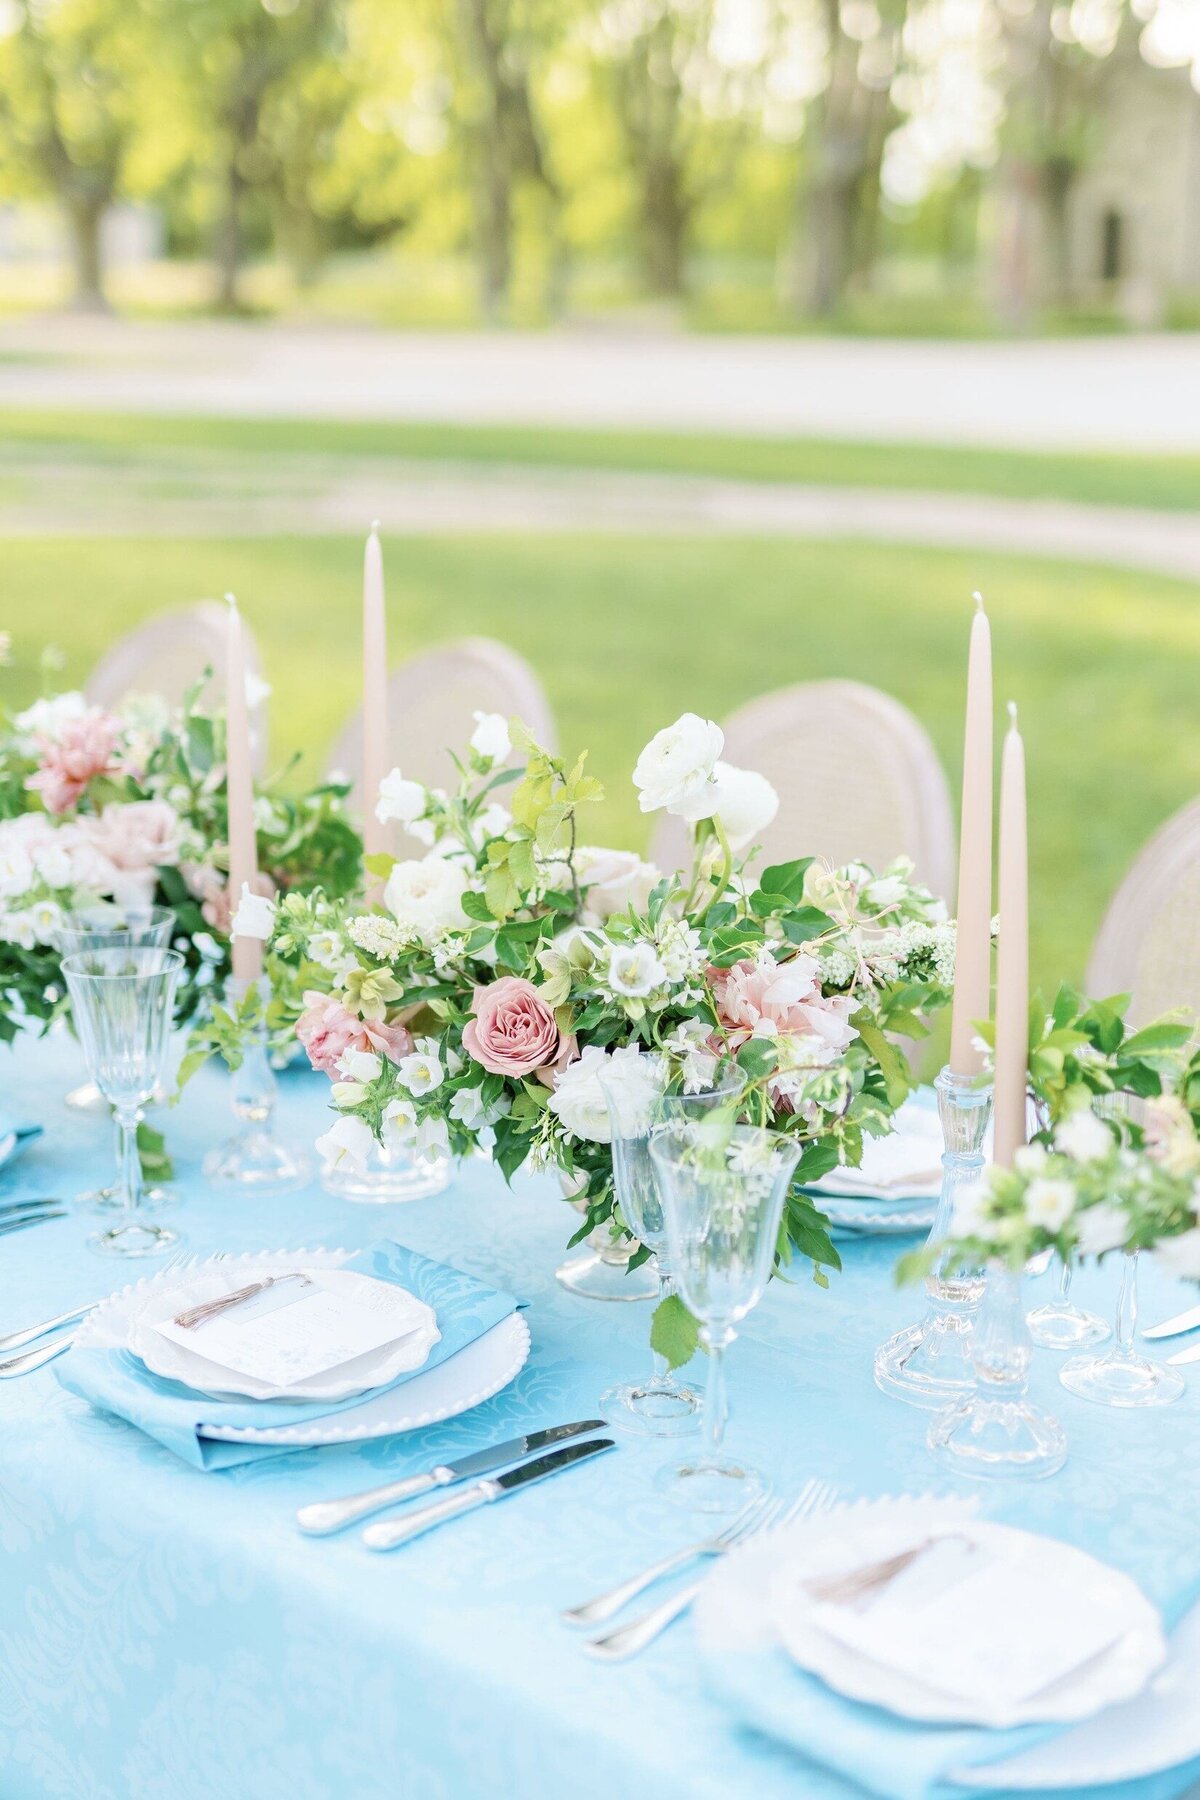 Décoration-florale-table-mariage-sur-mesure-2